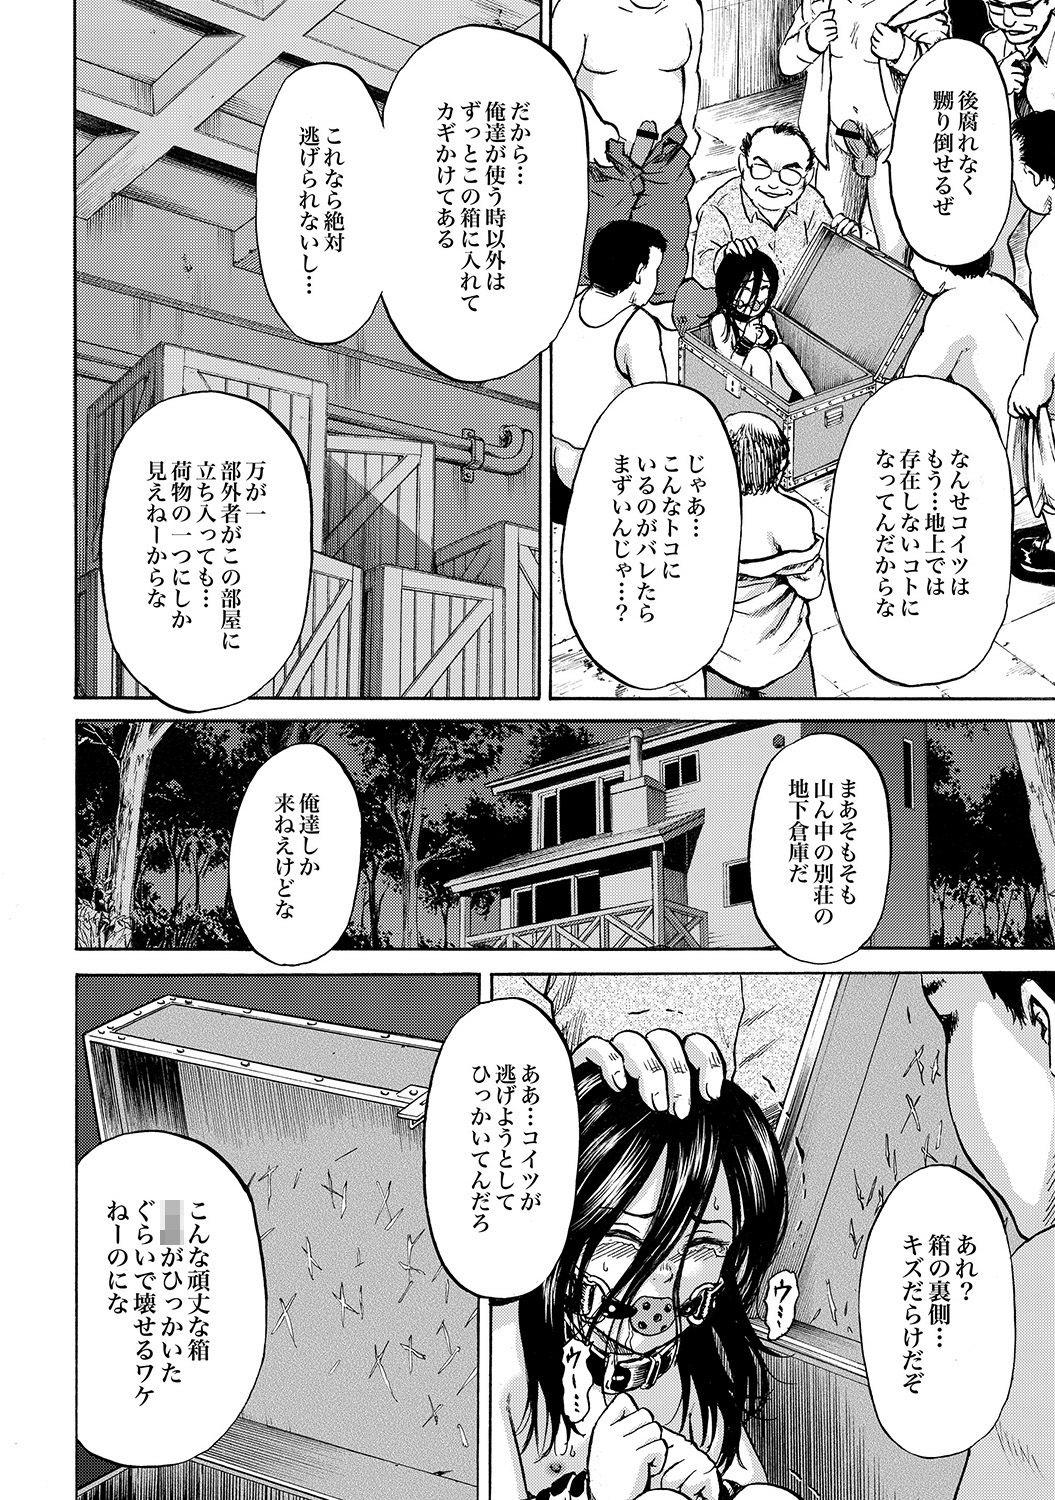 Her Hako no Naka no Mii Magrinha - Page 7